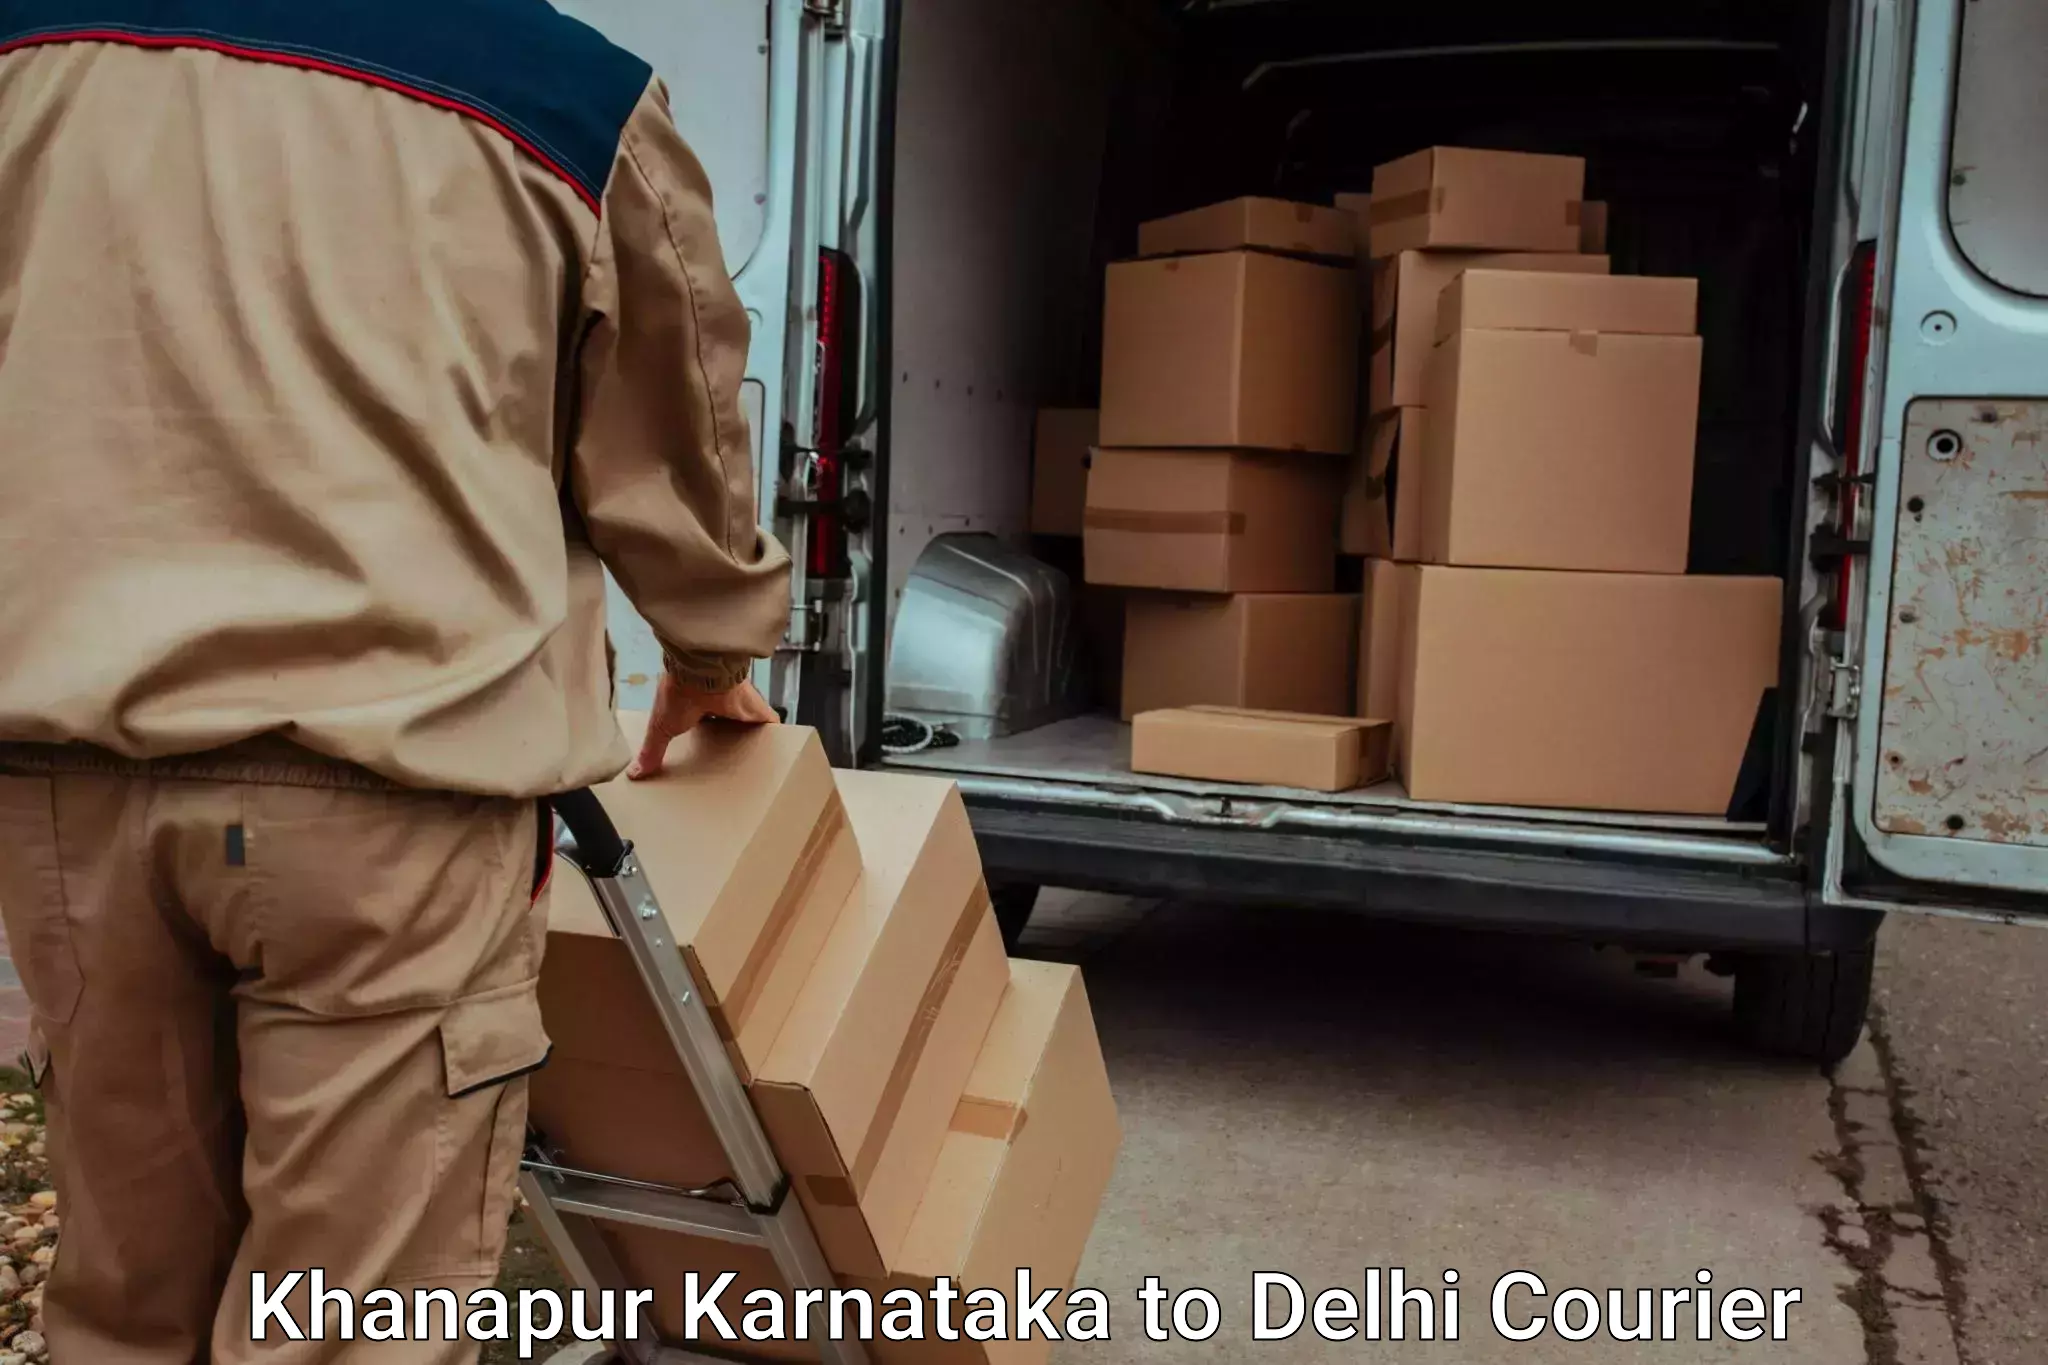 Furniture transport experts Khanapur Karnataka to Ashok Vihar